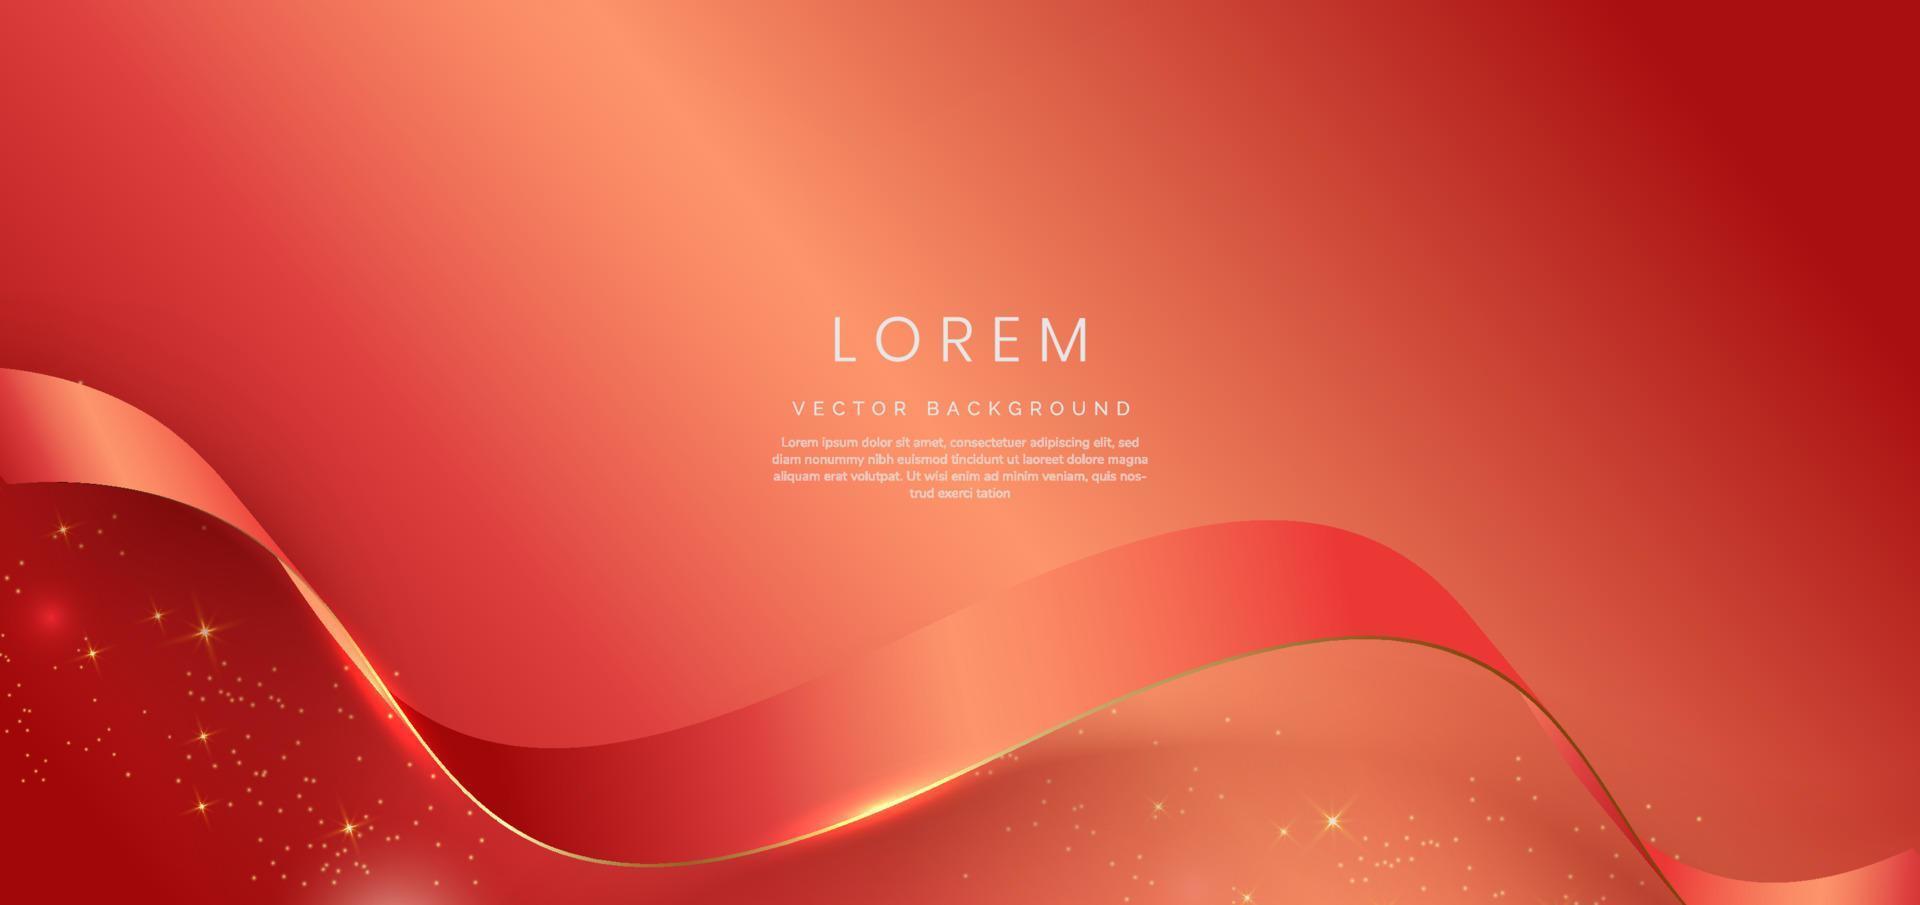 cinta roja curva de oro 3d abstracta sobre fondo rojo con efecto de iluminación bll y brillo con espacio de copia para texto. estilo de diseño de lujo. vector